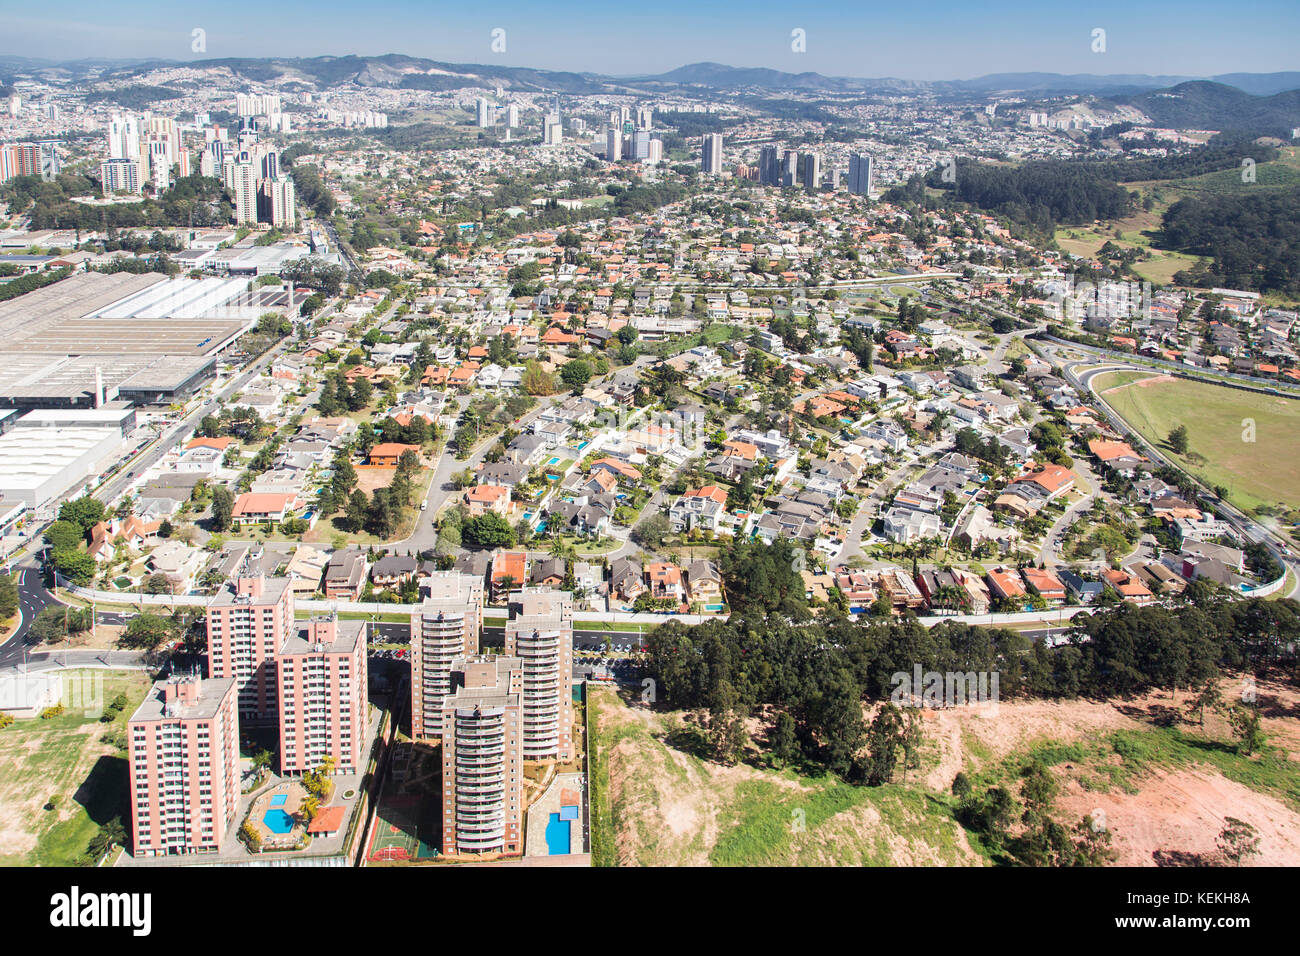 Vue aérienne d'Alphaville, région métropolitaine de Sao Paulo - Brésil Banque D'Images